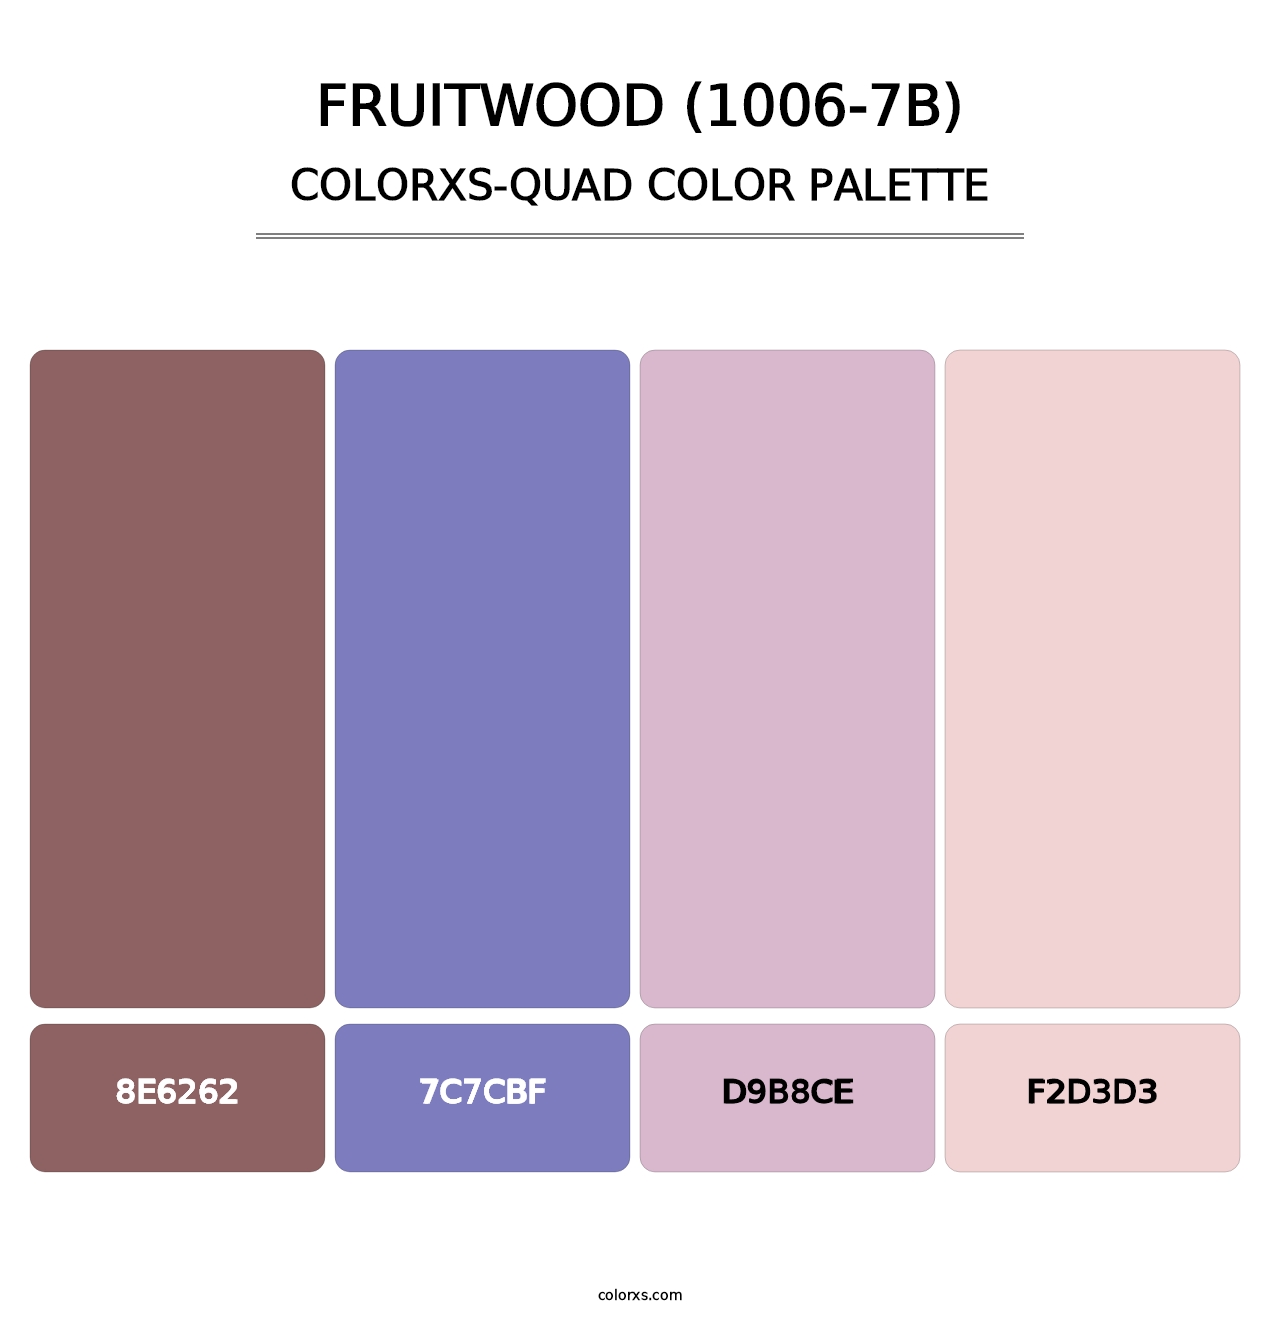 Fruitwood (1006-7B) - Colorxs Quad Palette